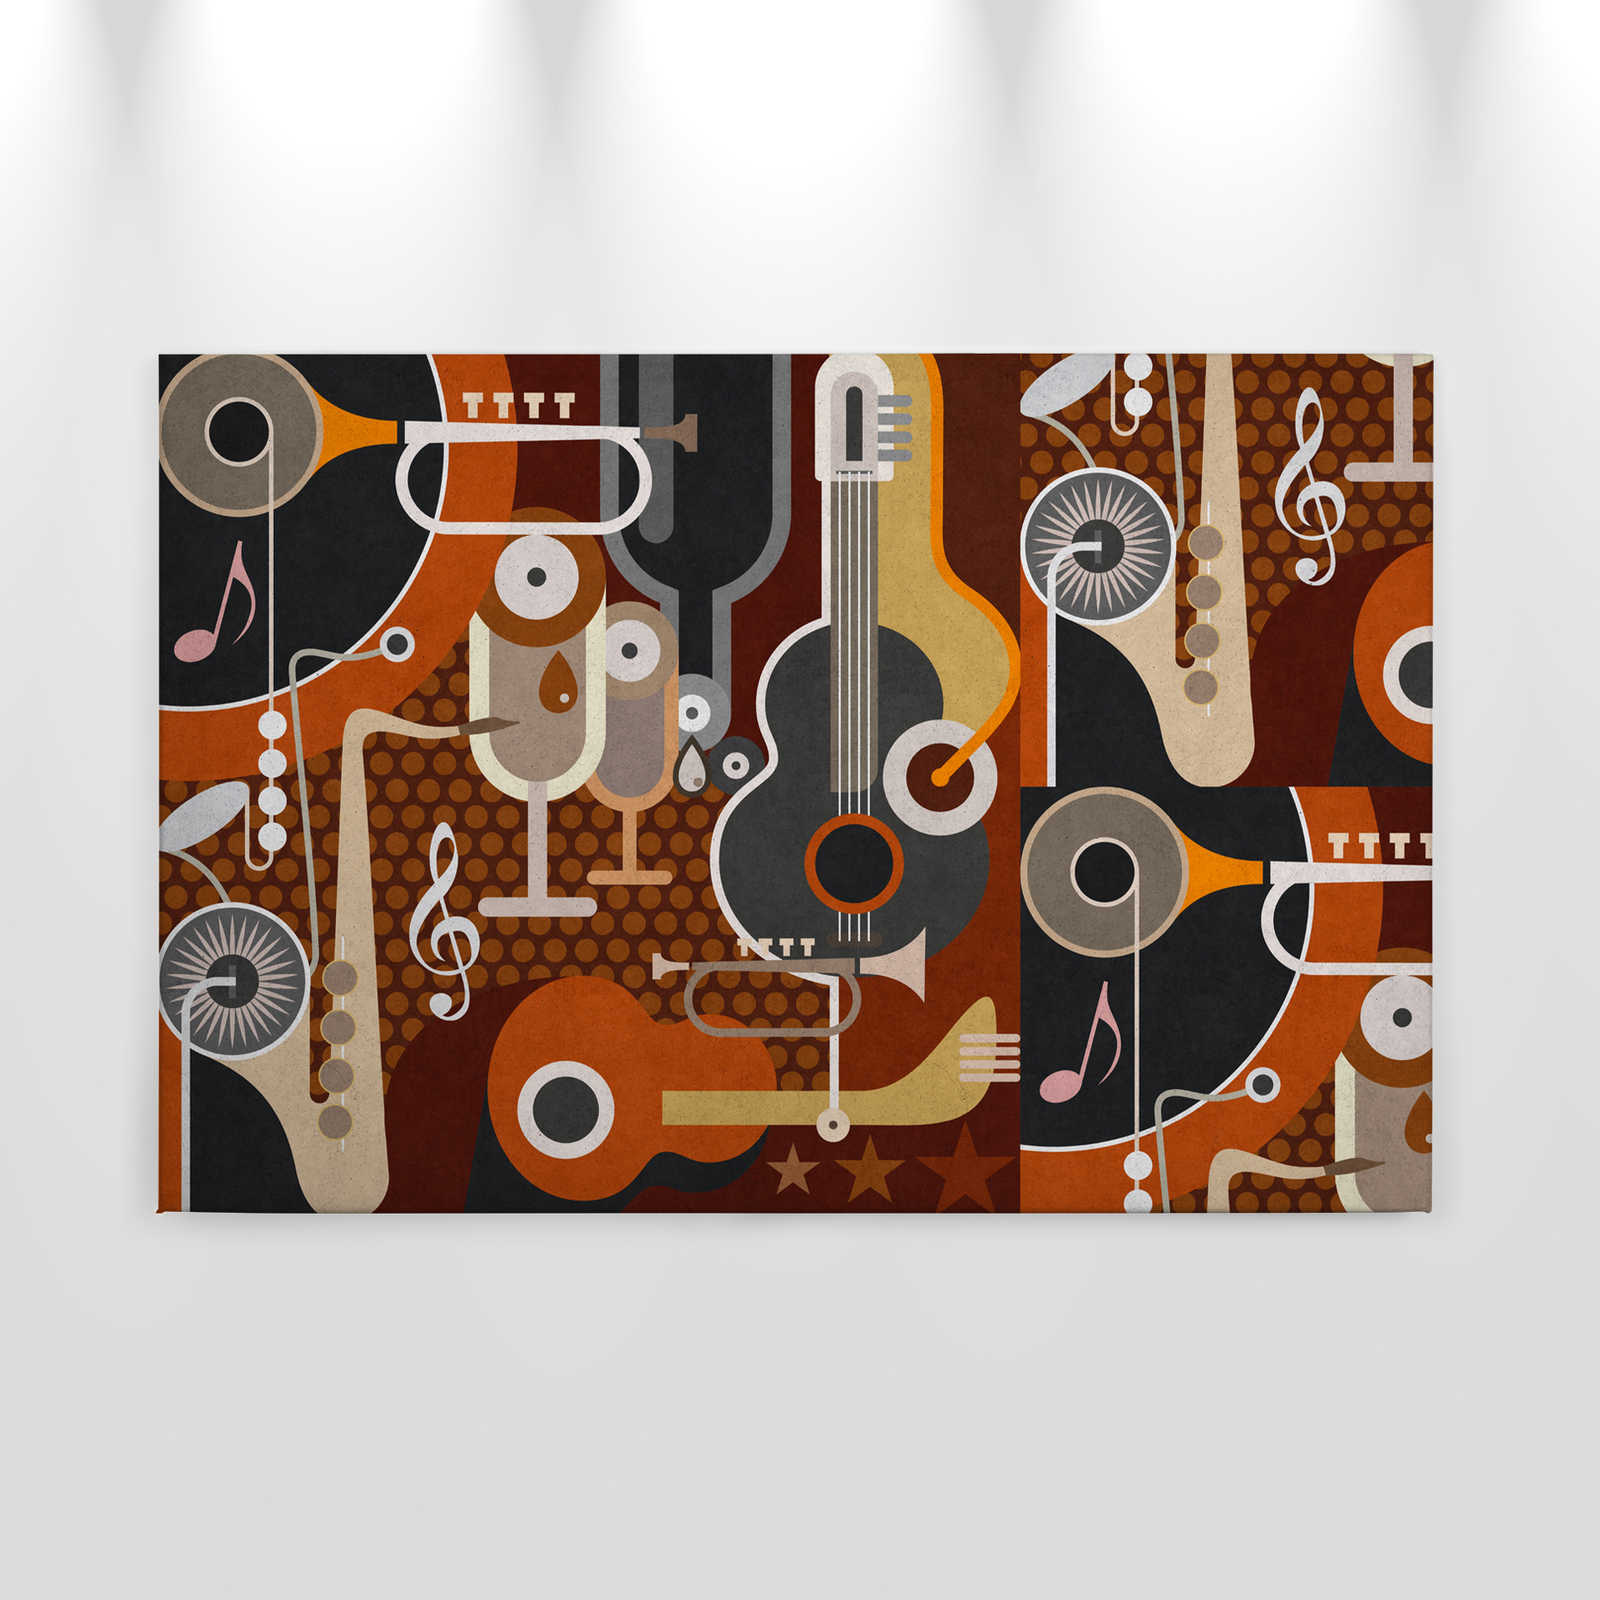             Wall of sound 1 - Canvas schilderij in betonstructuur, abstracte muziekinstrumenten - 0.90 m x 0.60 m
        